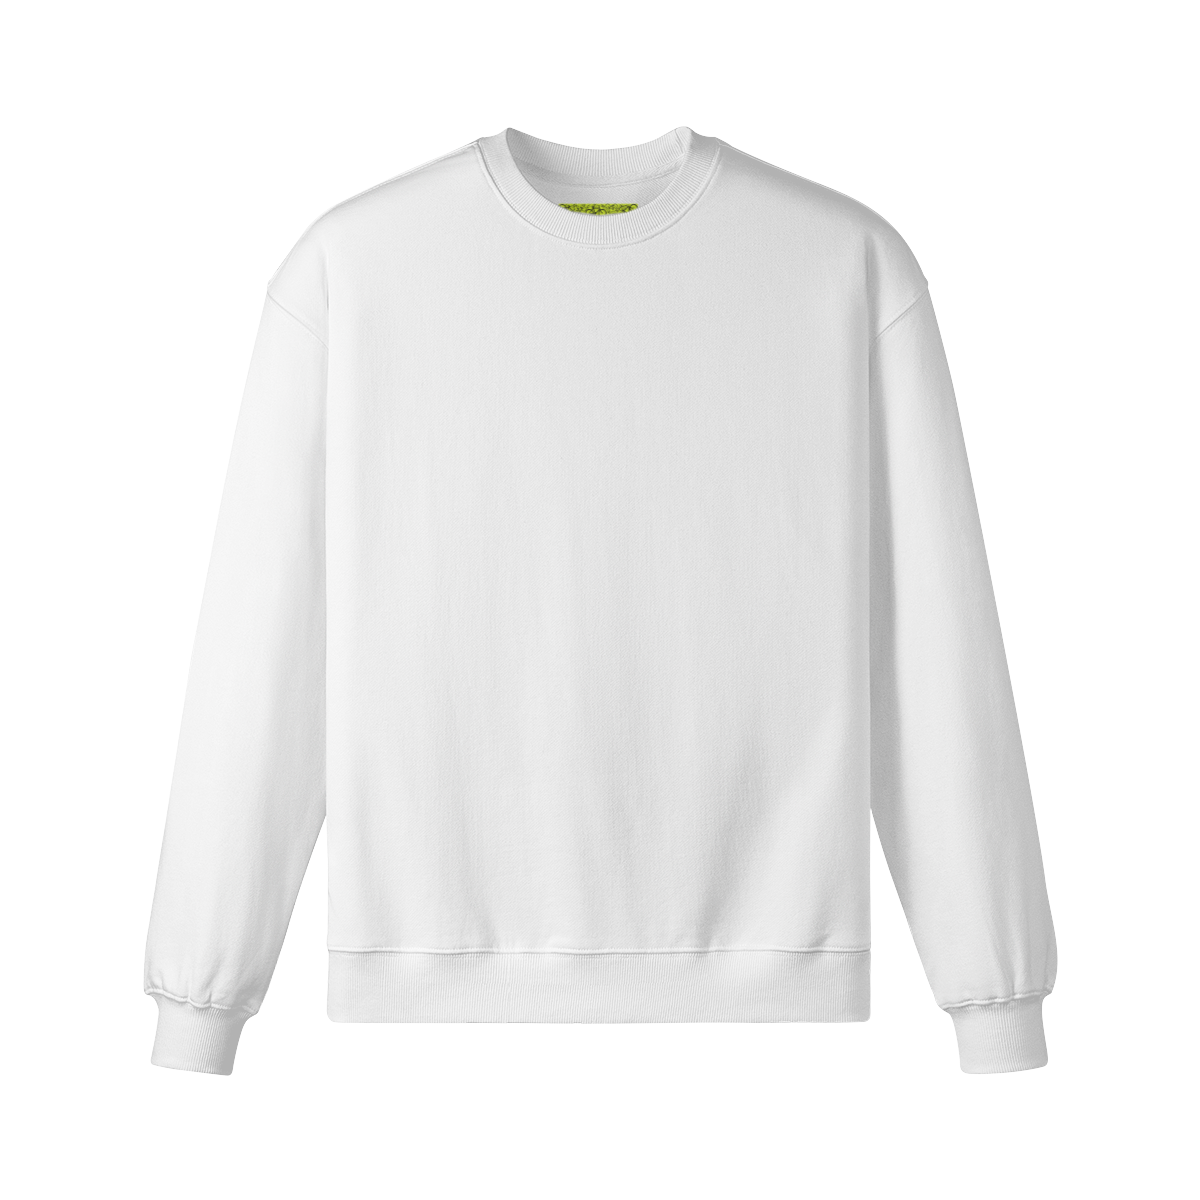 RAVE ON (BACK PRINT) - Unisex Oversized Sweatshirt